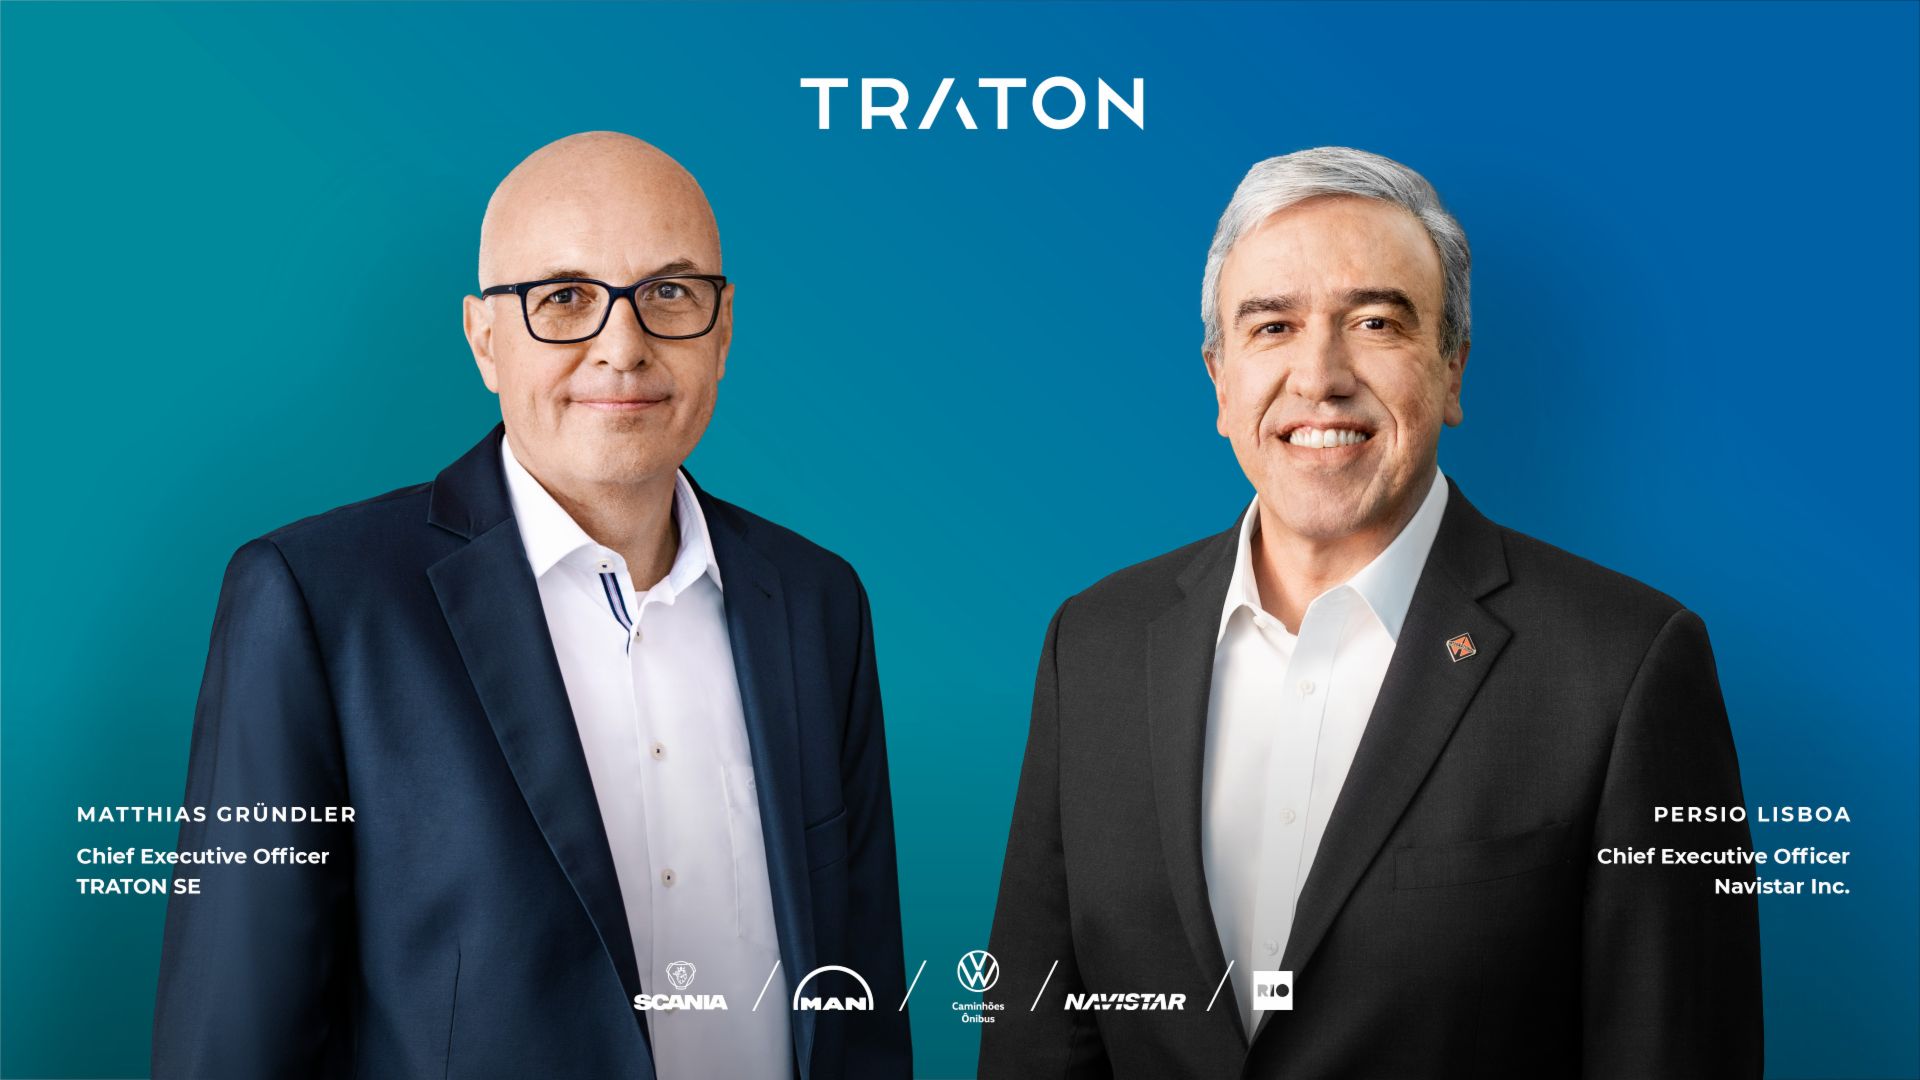 Bild von Matthias Gründler (CEO TRATON SE, links) und Persio Lisboa (CEO Navistar Inc., rechts) vor einem blauen Hintergrund mit Beschreibung und Markenband